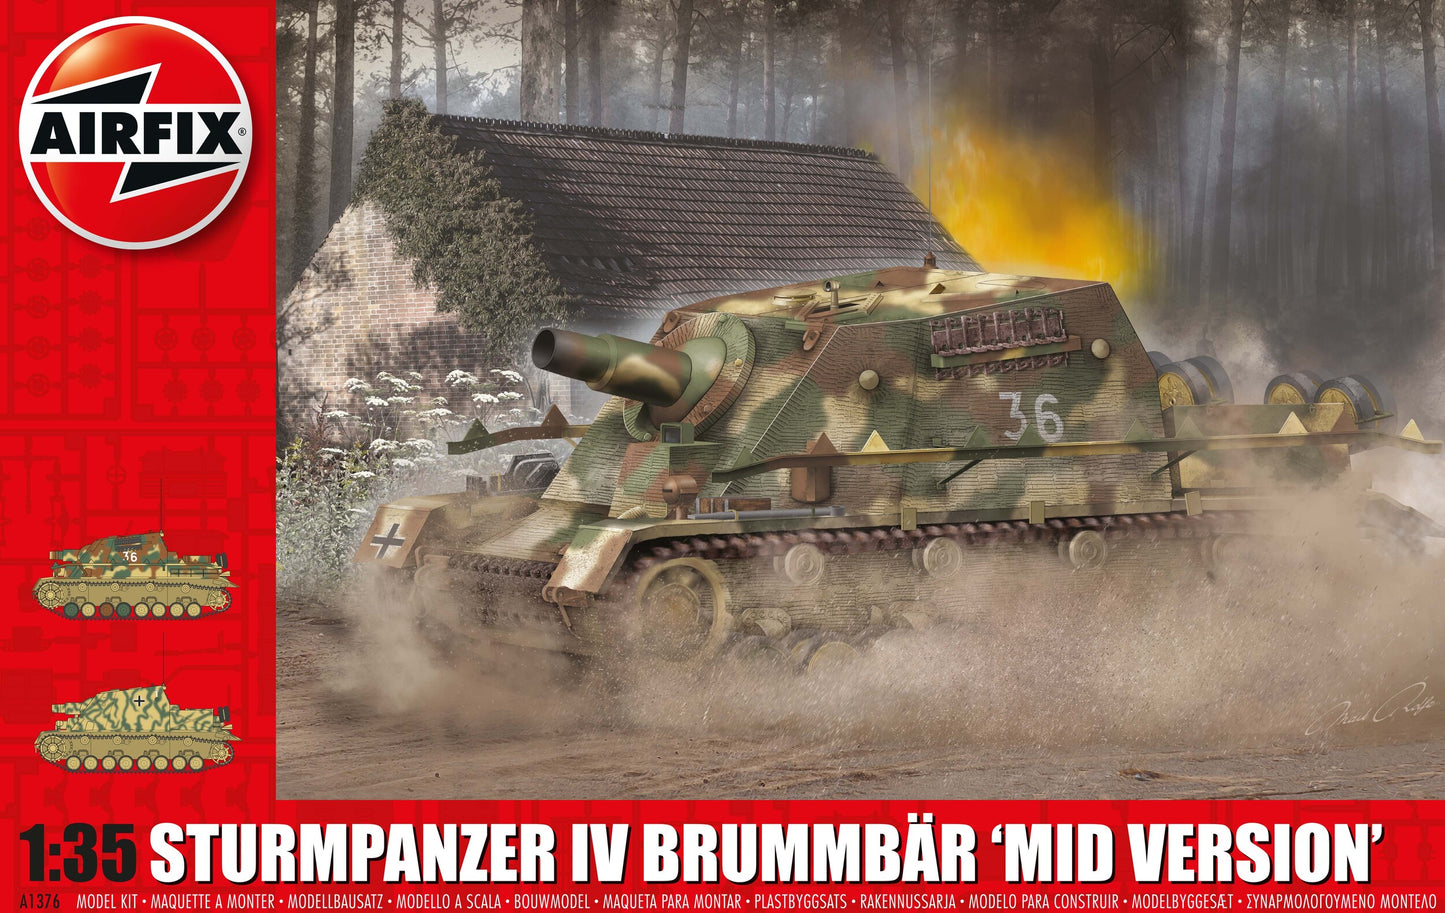 Airfix 1/35th scale Sturmpanzer IV Brummbar "Mid Version"